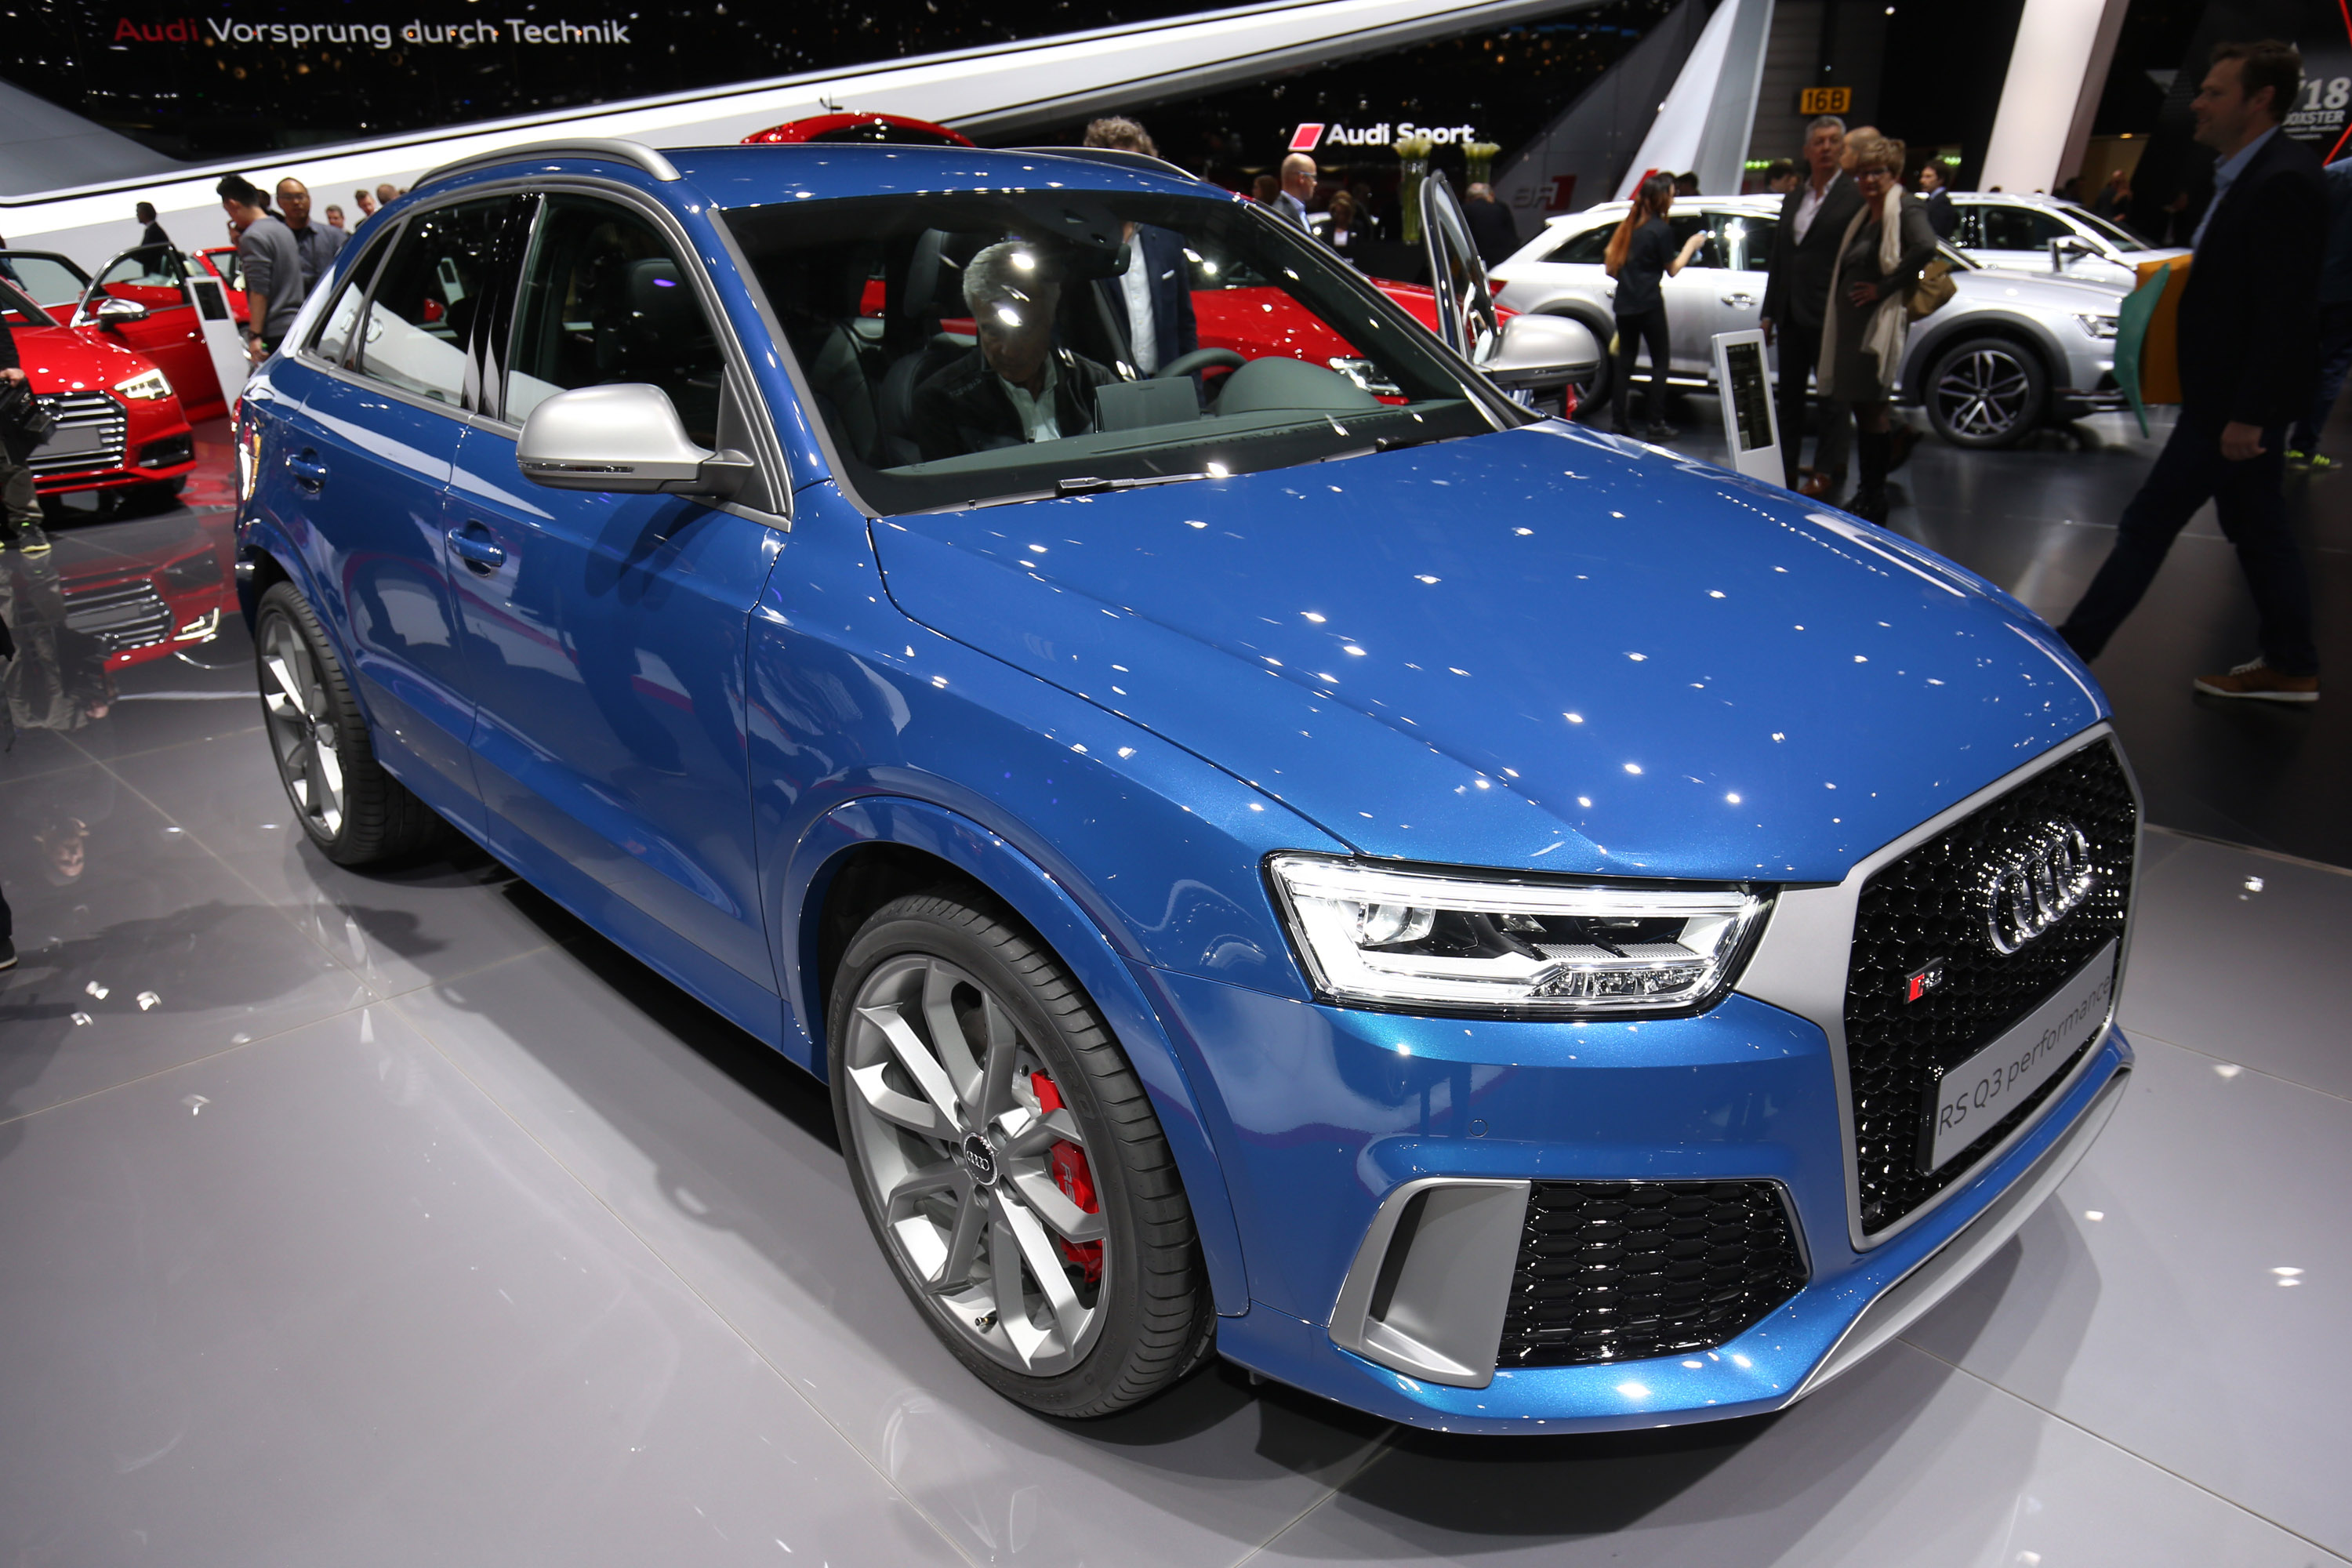 Audi Q3 performance Geneva